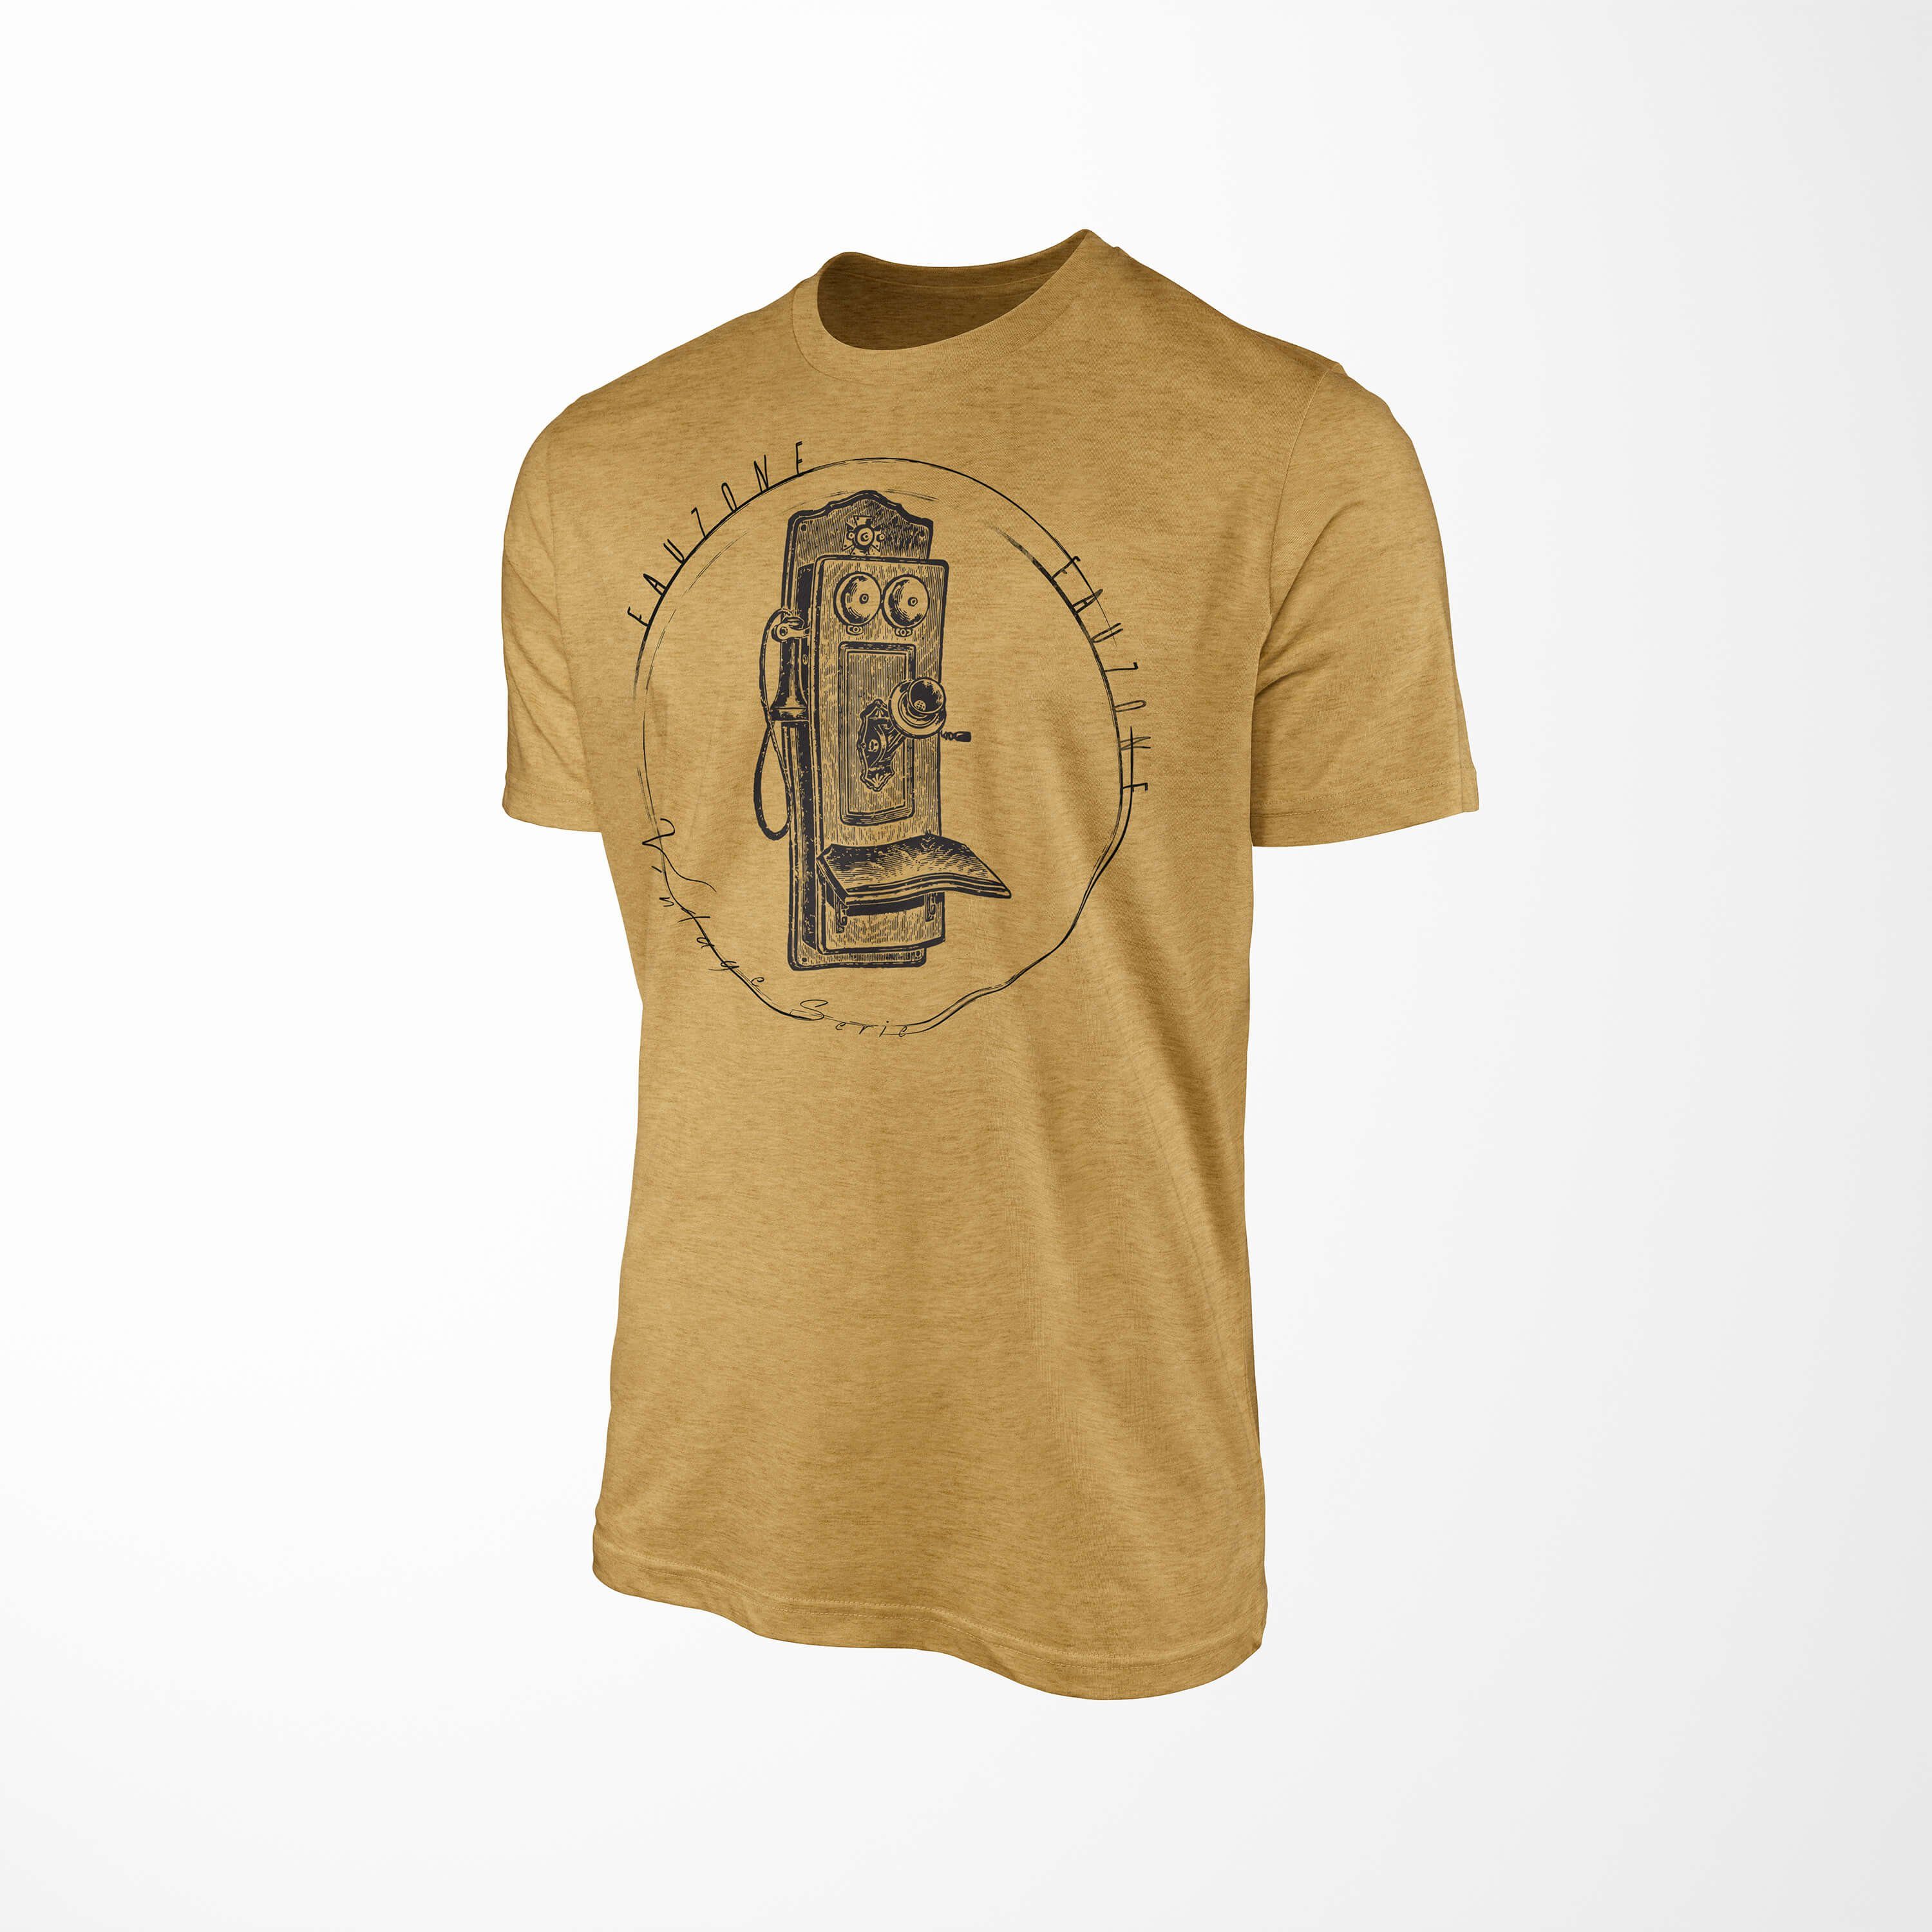 T-Shirt Art Sinus Herren Antique Gold T-Shirt Vintage Telefonkasten